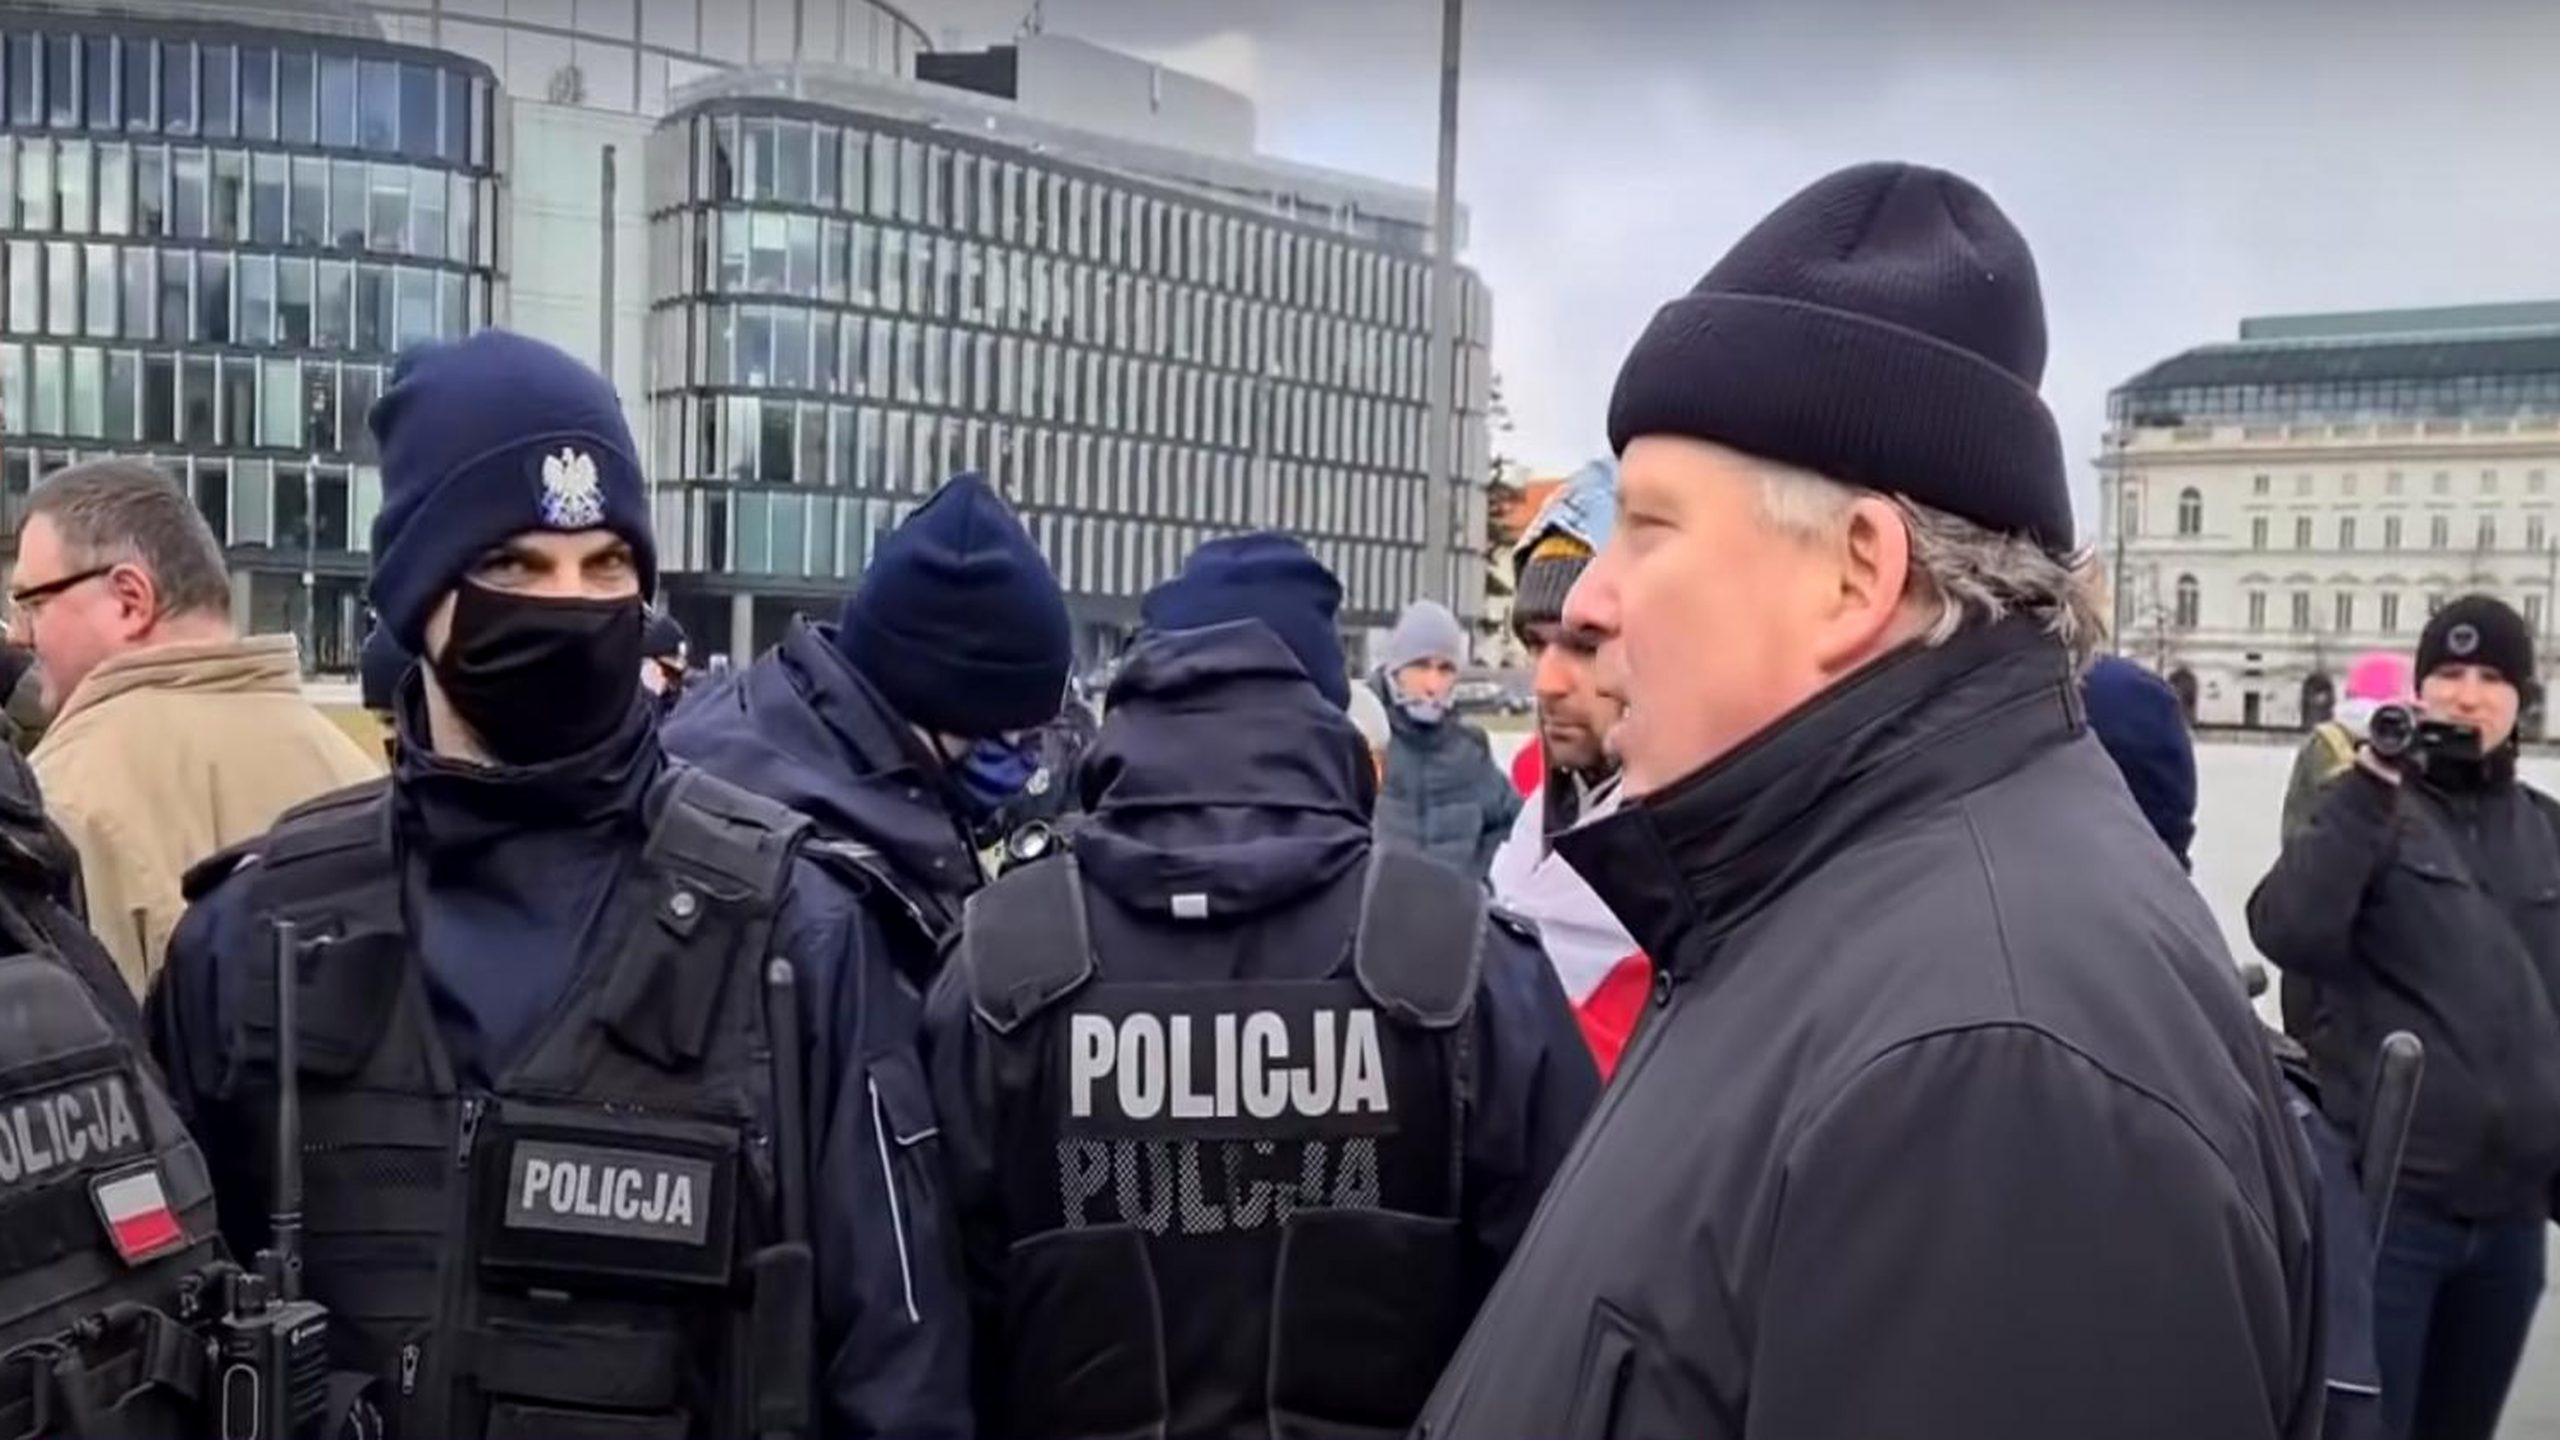 propolski.pl: Protestujący ostro do policji: Na co przysięgałeś? Czego k***a nie rozumiesz?! [WIDEO]